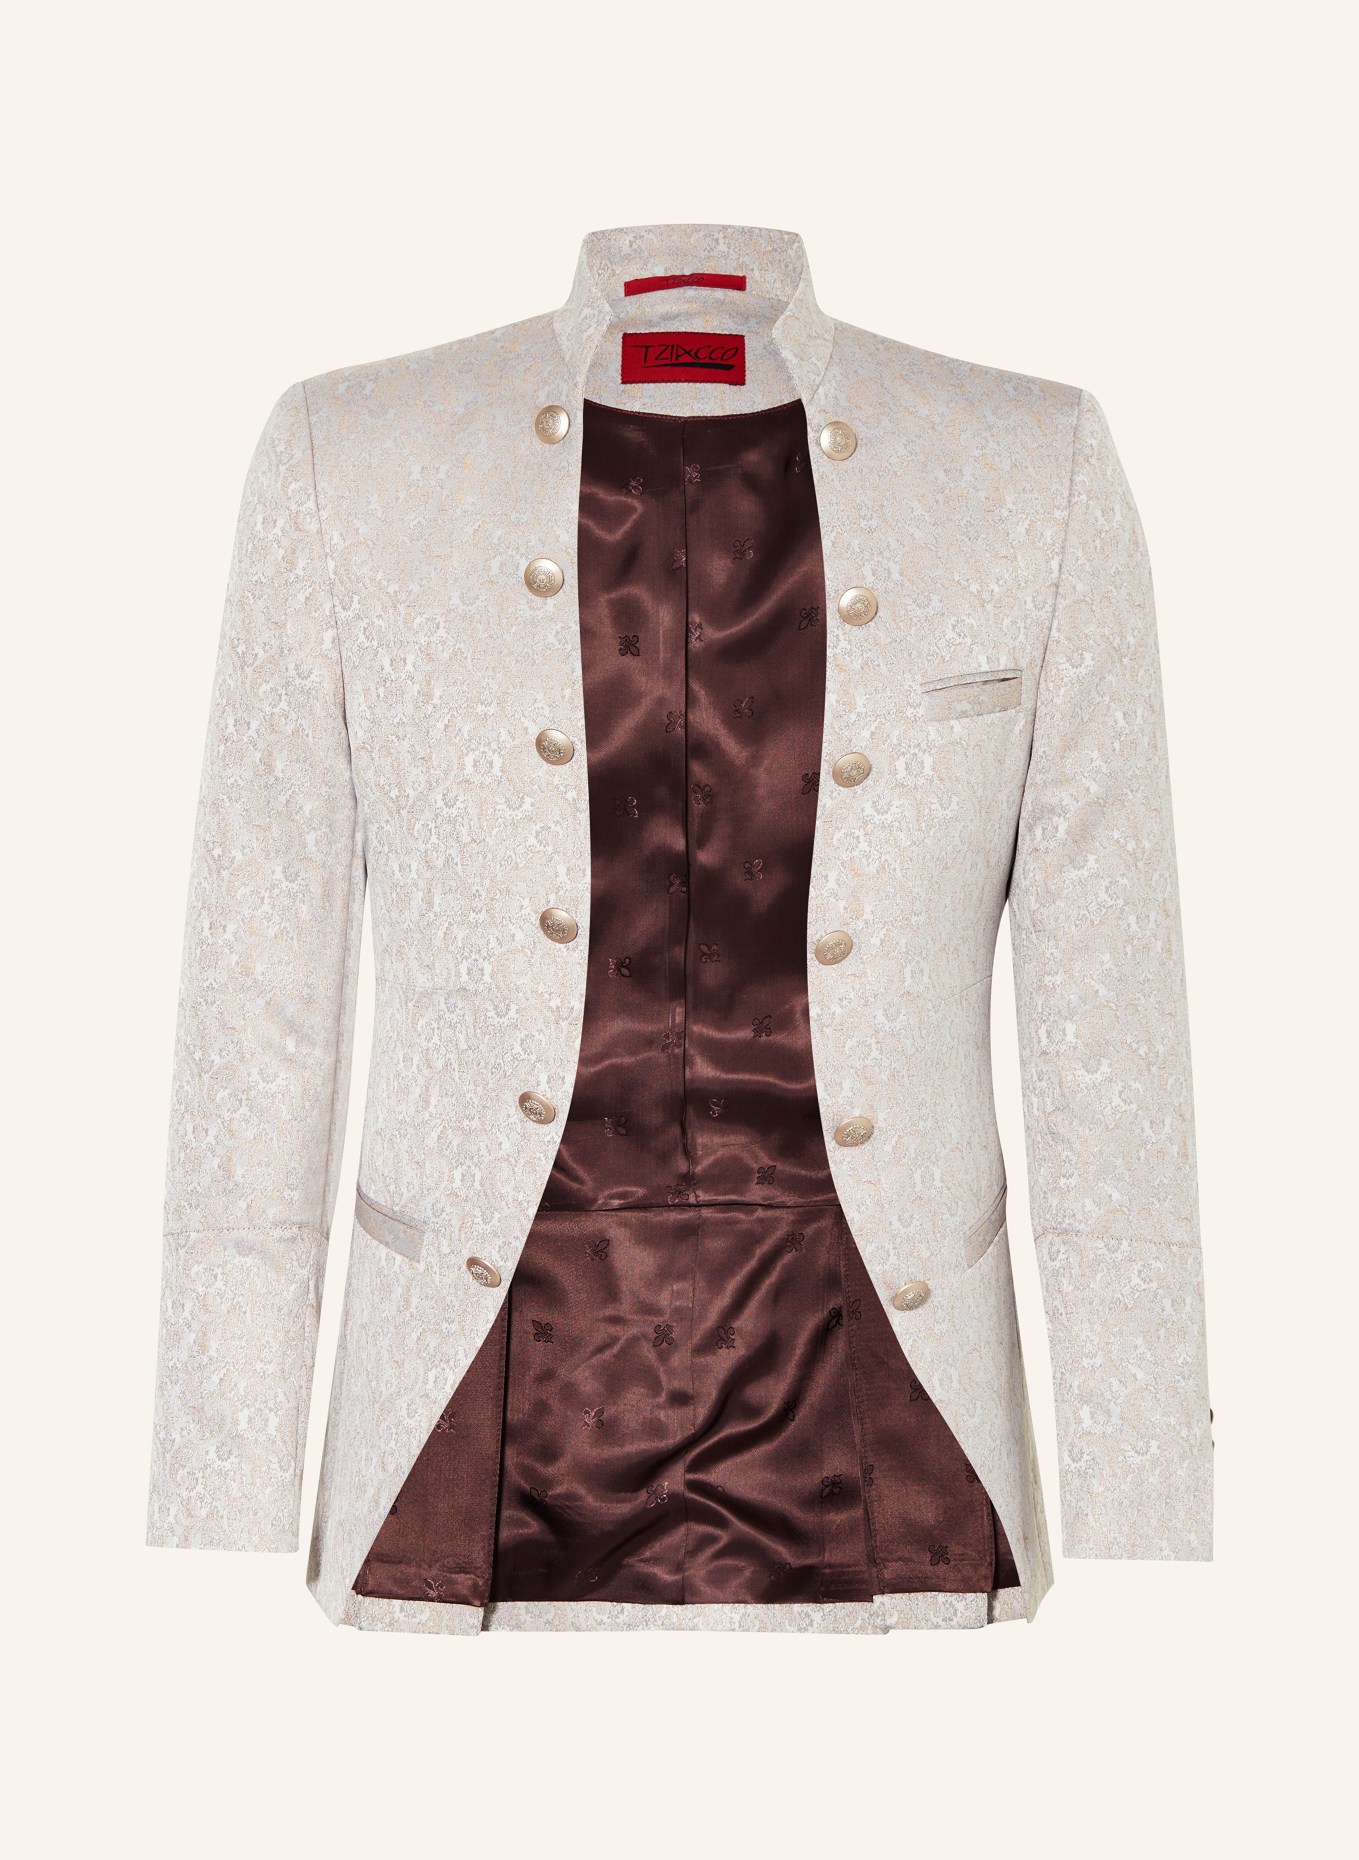 WILVORST Tailored jacket extra slim fit, Color: 083 Beige gem. (Image 1)